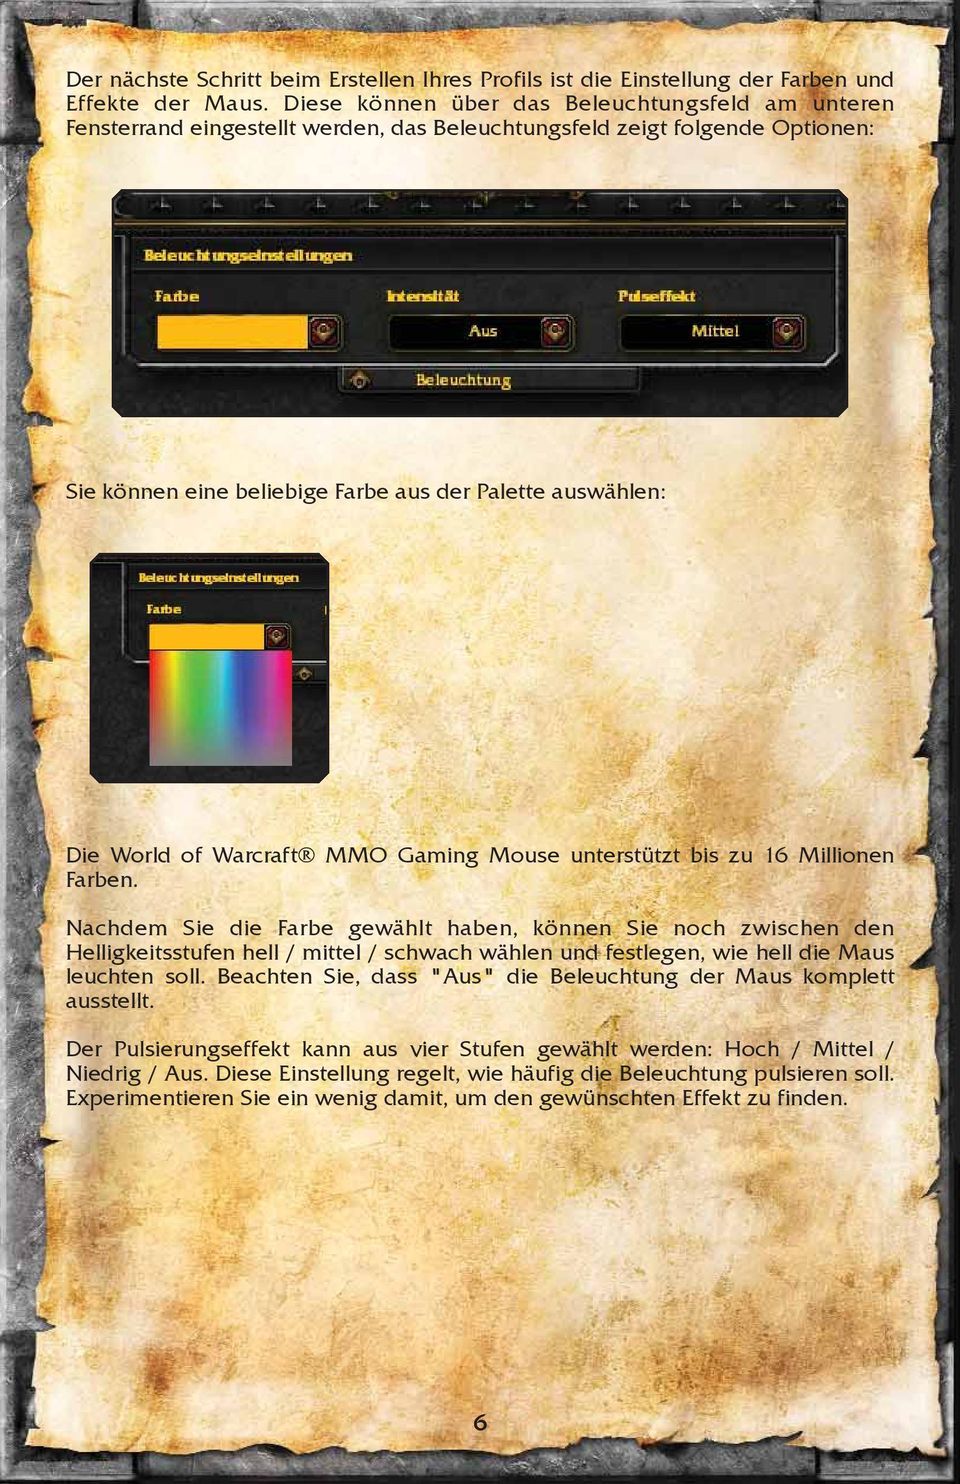 Warcraft MMO Gaming Mouse unterstützt bis zu 16 Millionen Farben.